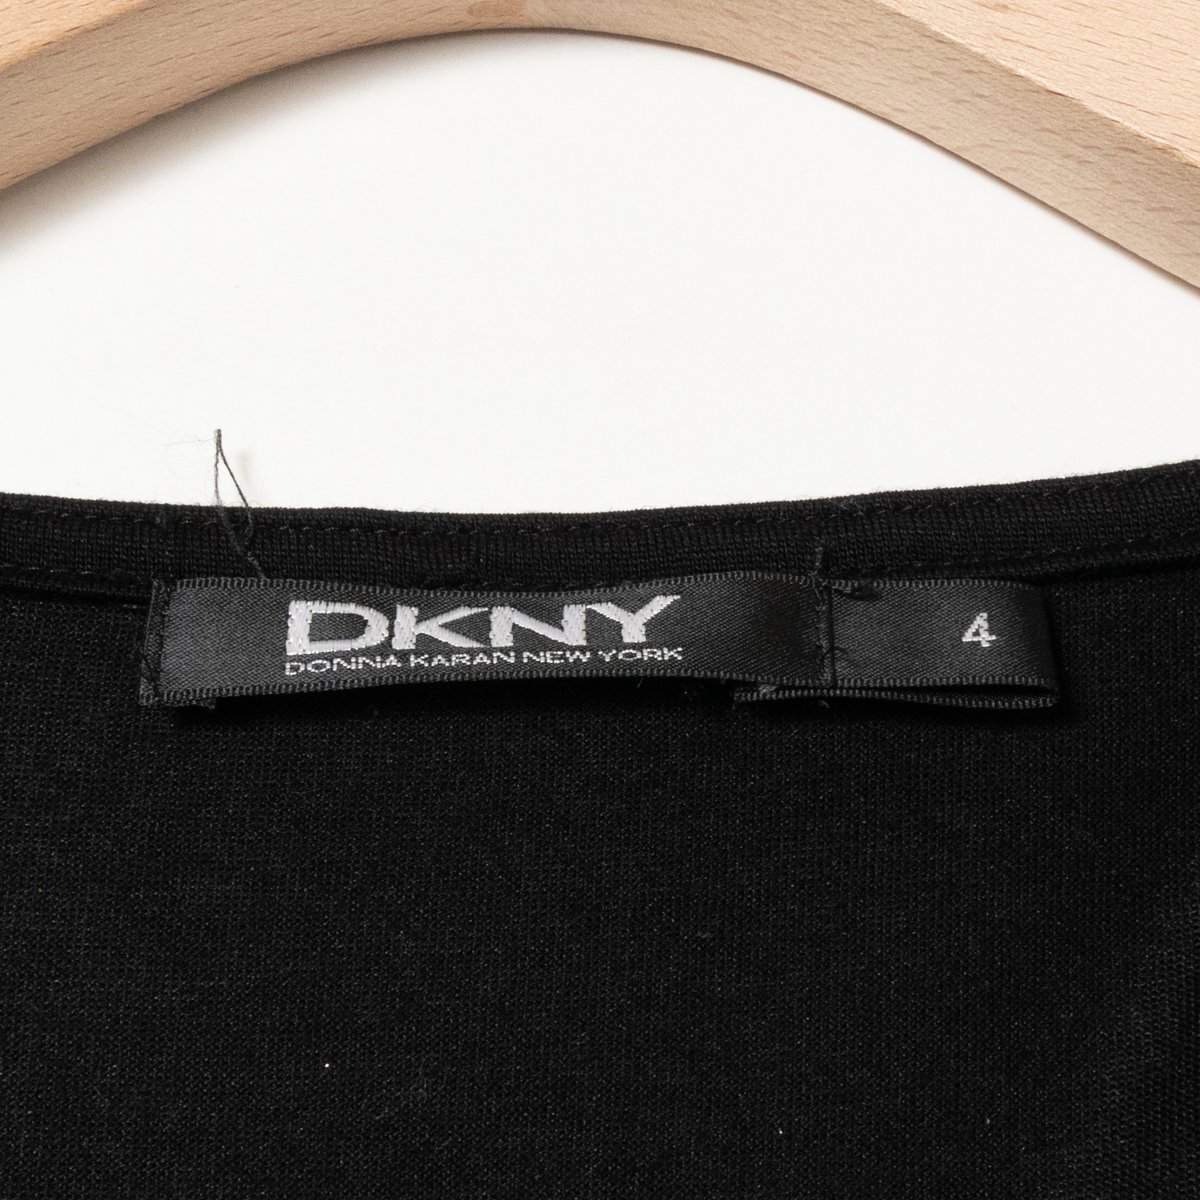 DKNY ダナキャラン 日本製 レオパード柄 ワンピース 豹柄 ロングワンピース 4 リヨセル ブラック ブラウン 綺麗め カジュアル_画像2